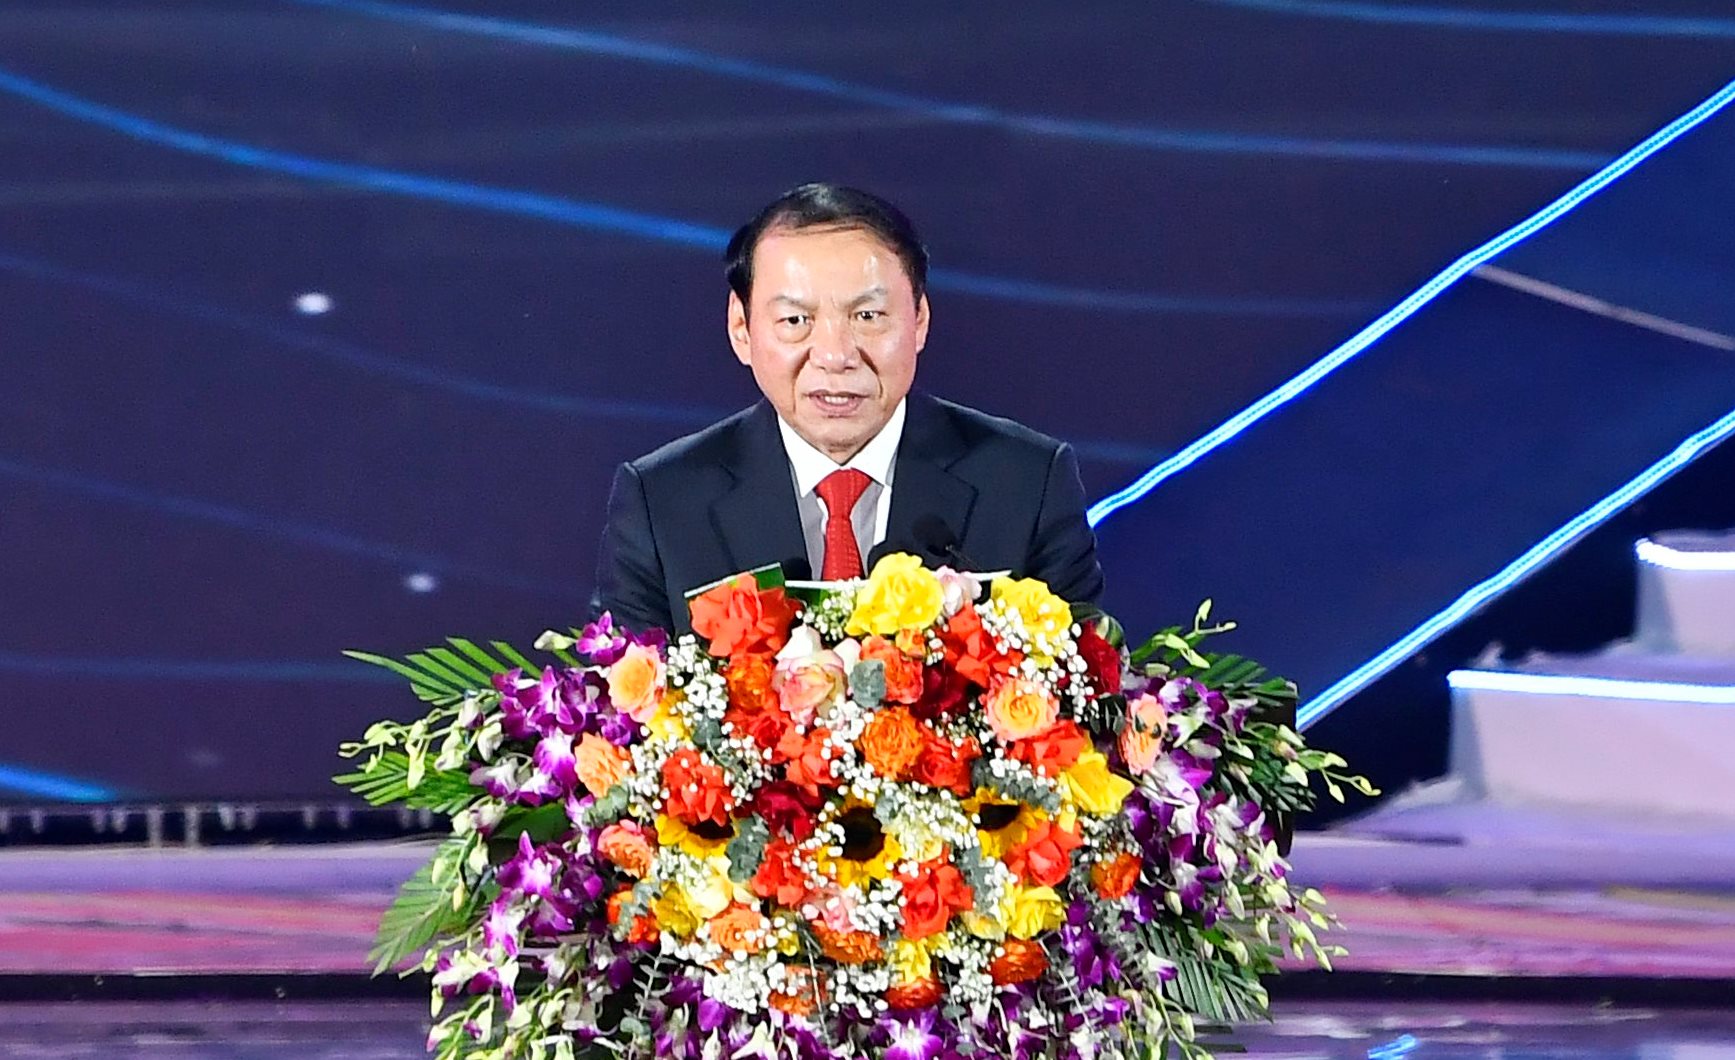 Bộ trưởng Bộ Văn hóa, Thể thao và Du lịch Nguyễn Văn Hùng phát biểu tại lễ khai mạc